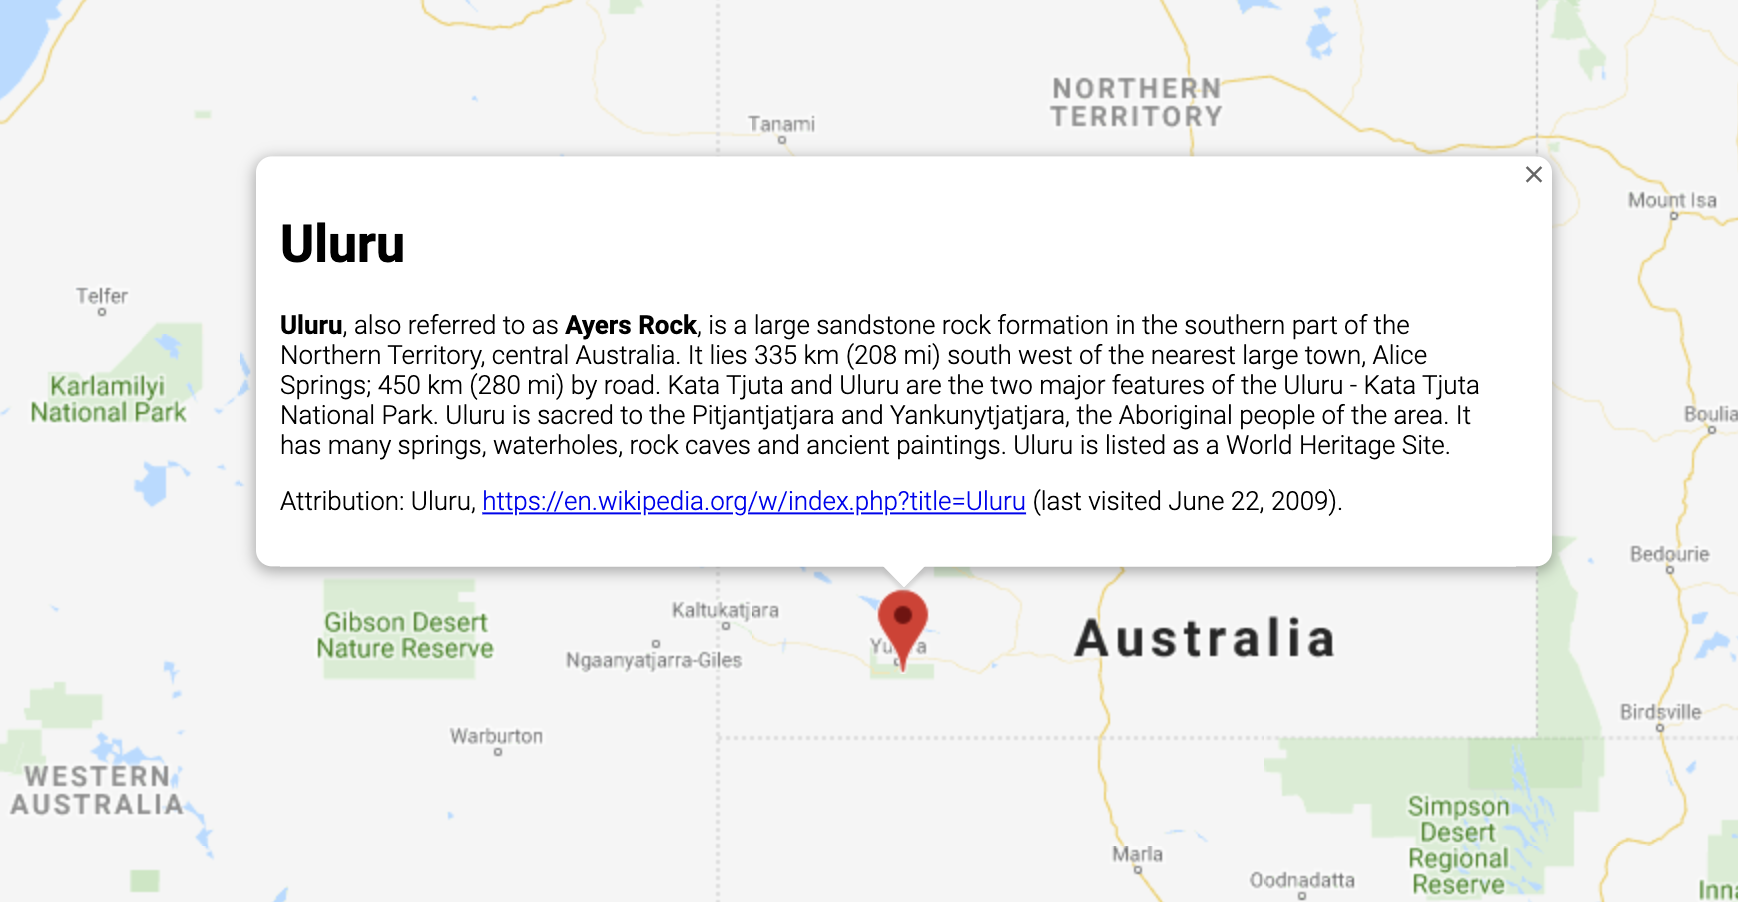 ऑस्ट्रेलिया के किसी स्थान के बारे में जानकारी दिखाने वाली इन्फ़ोविंडो.